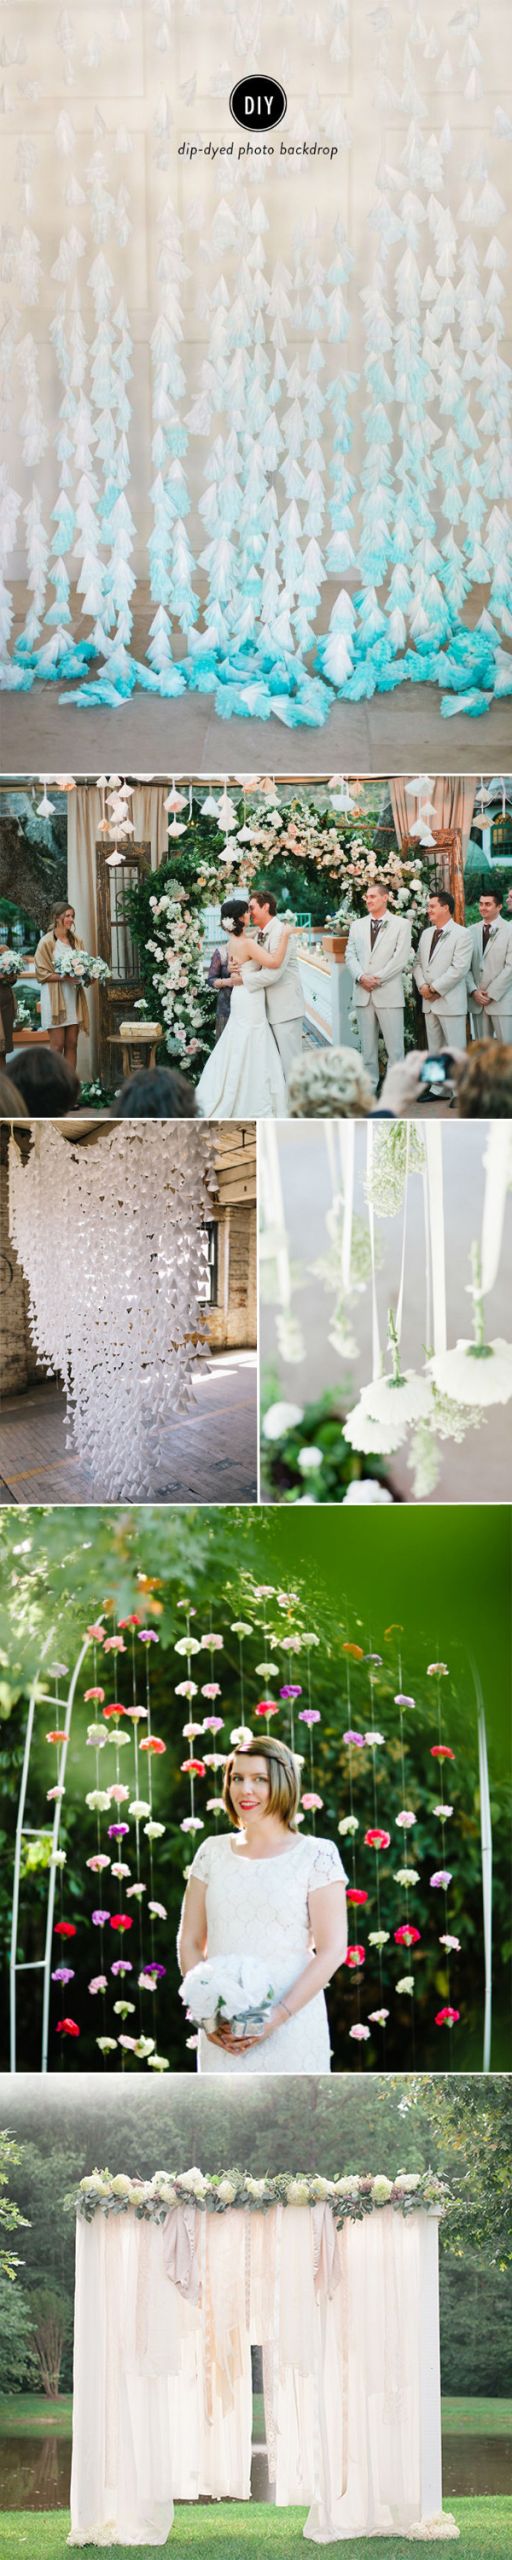 DIY Wedding Decorations Ideas
 7 Charming DIY Wedding Decor Ideas We Love